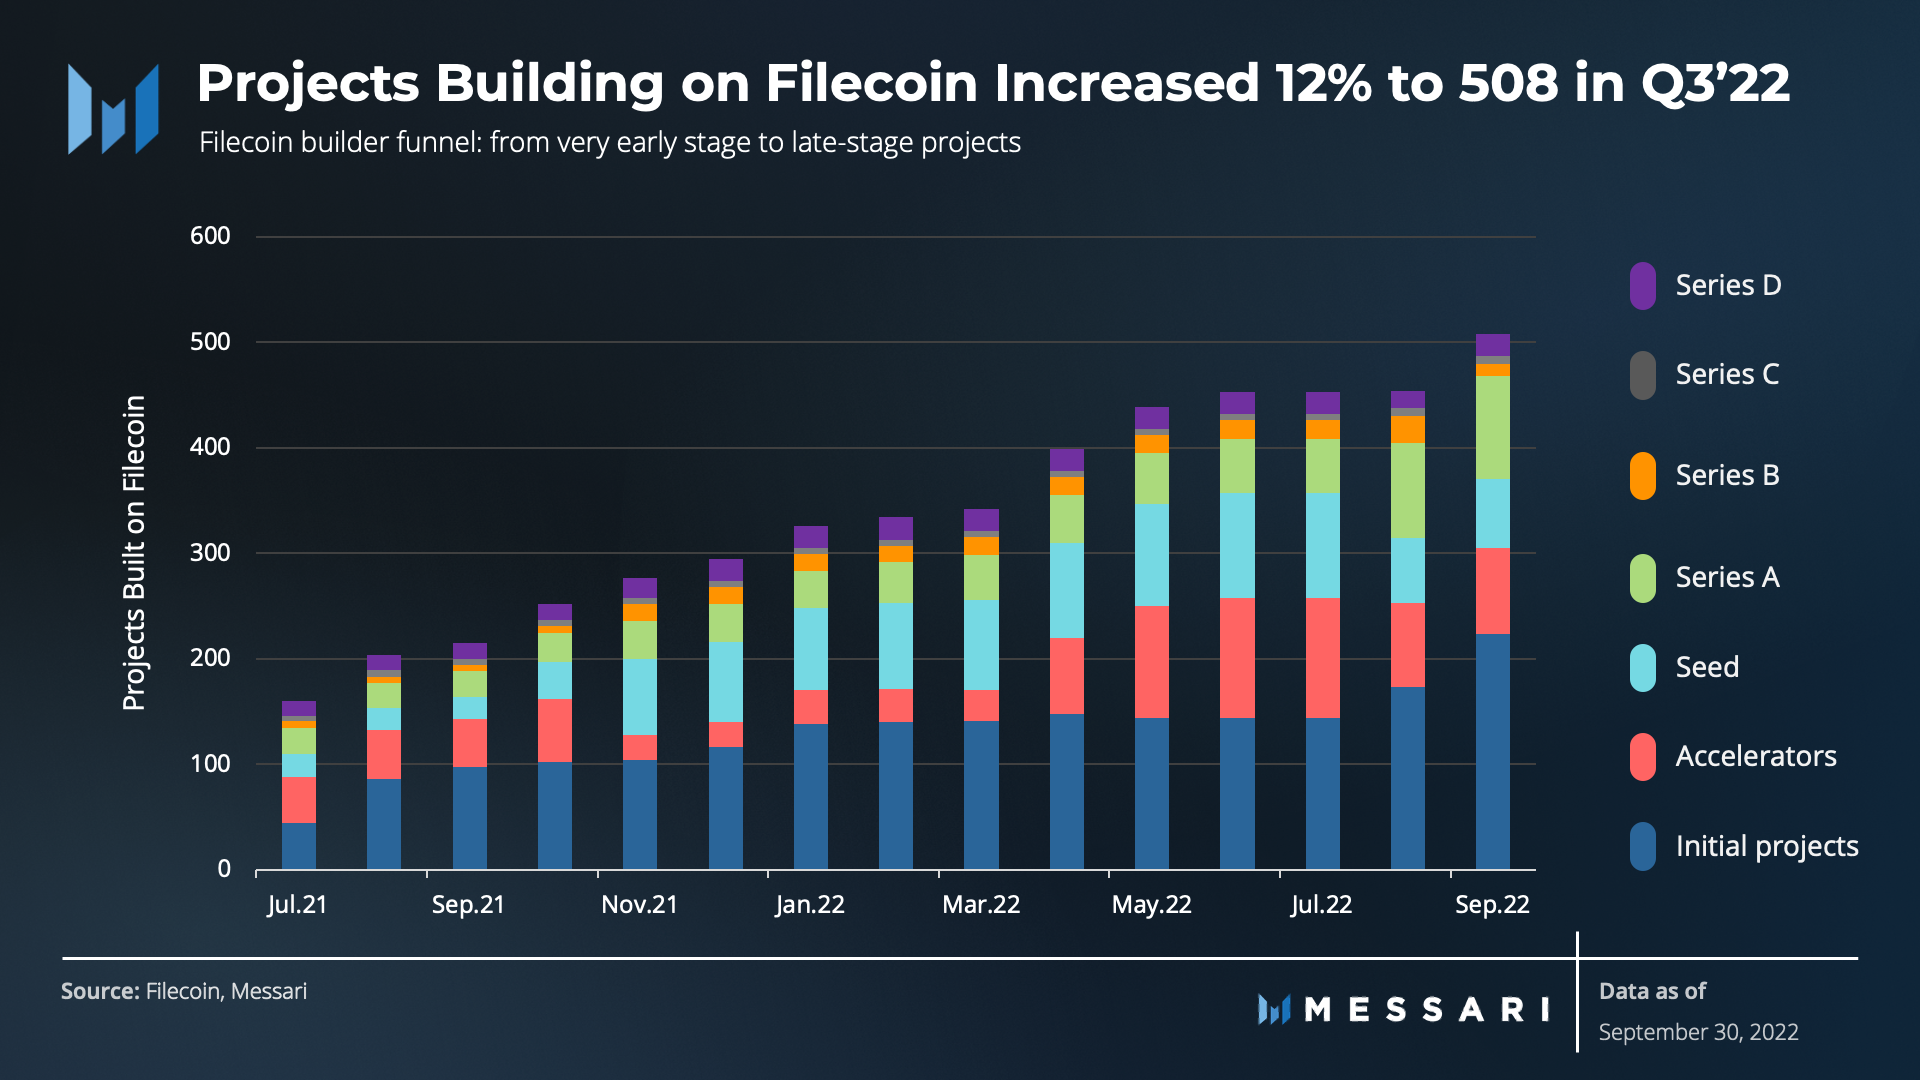 Số dự án xây dựng trên Filecoin theo quý